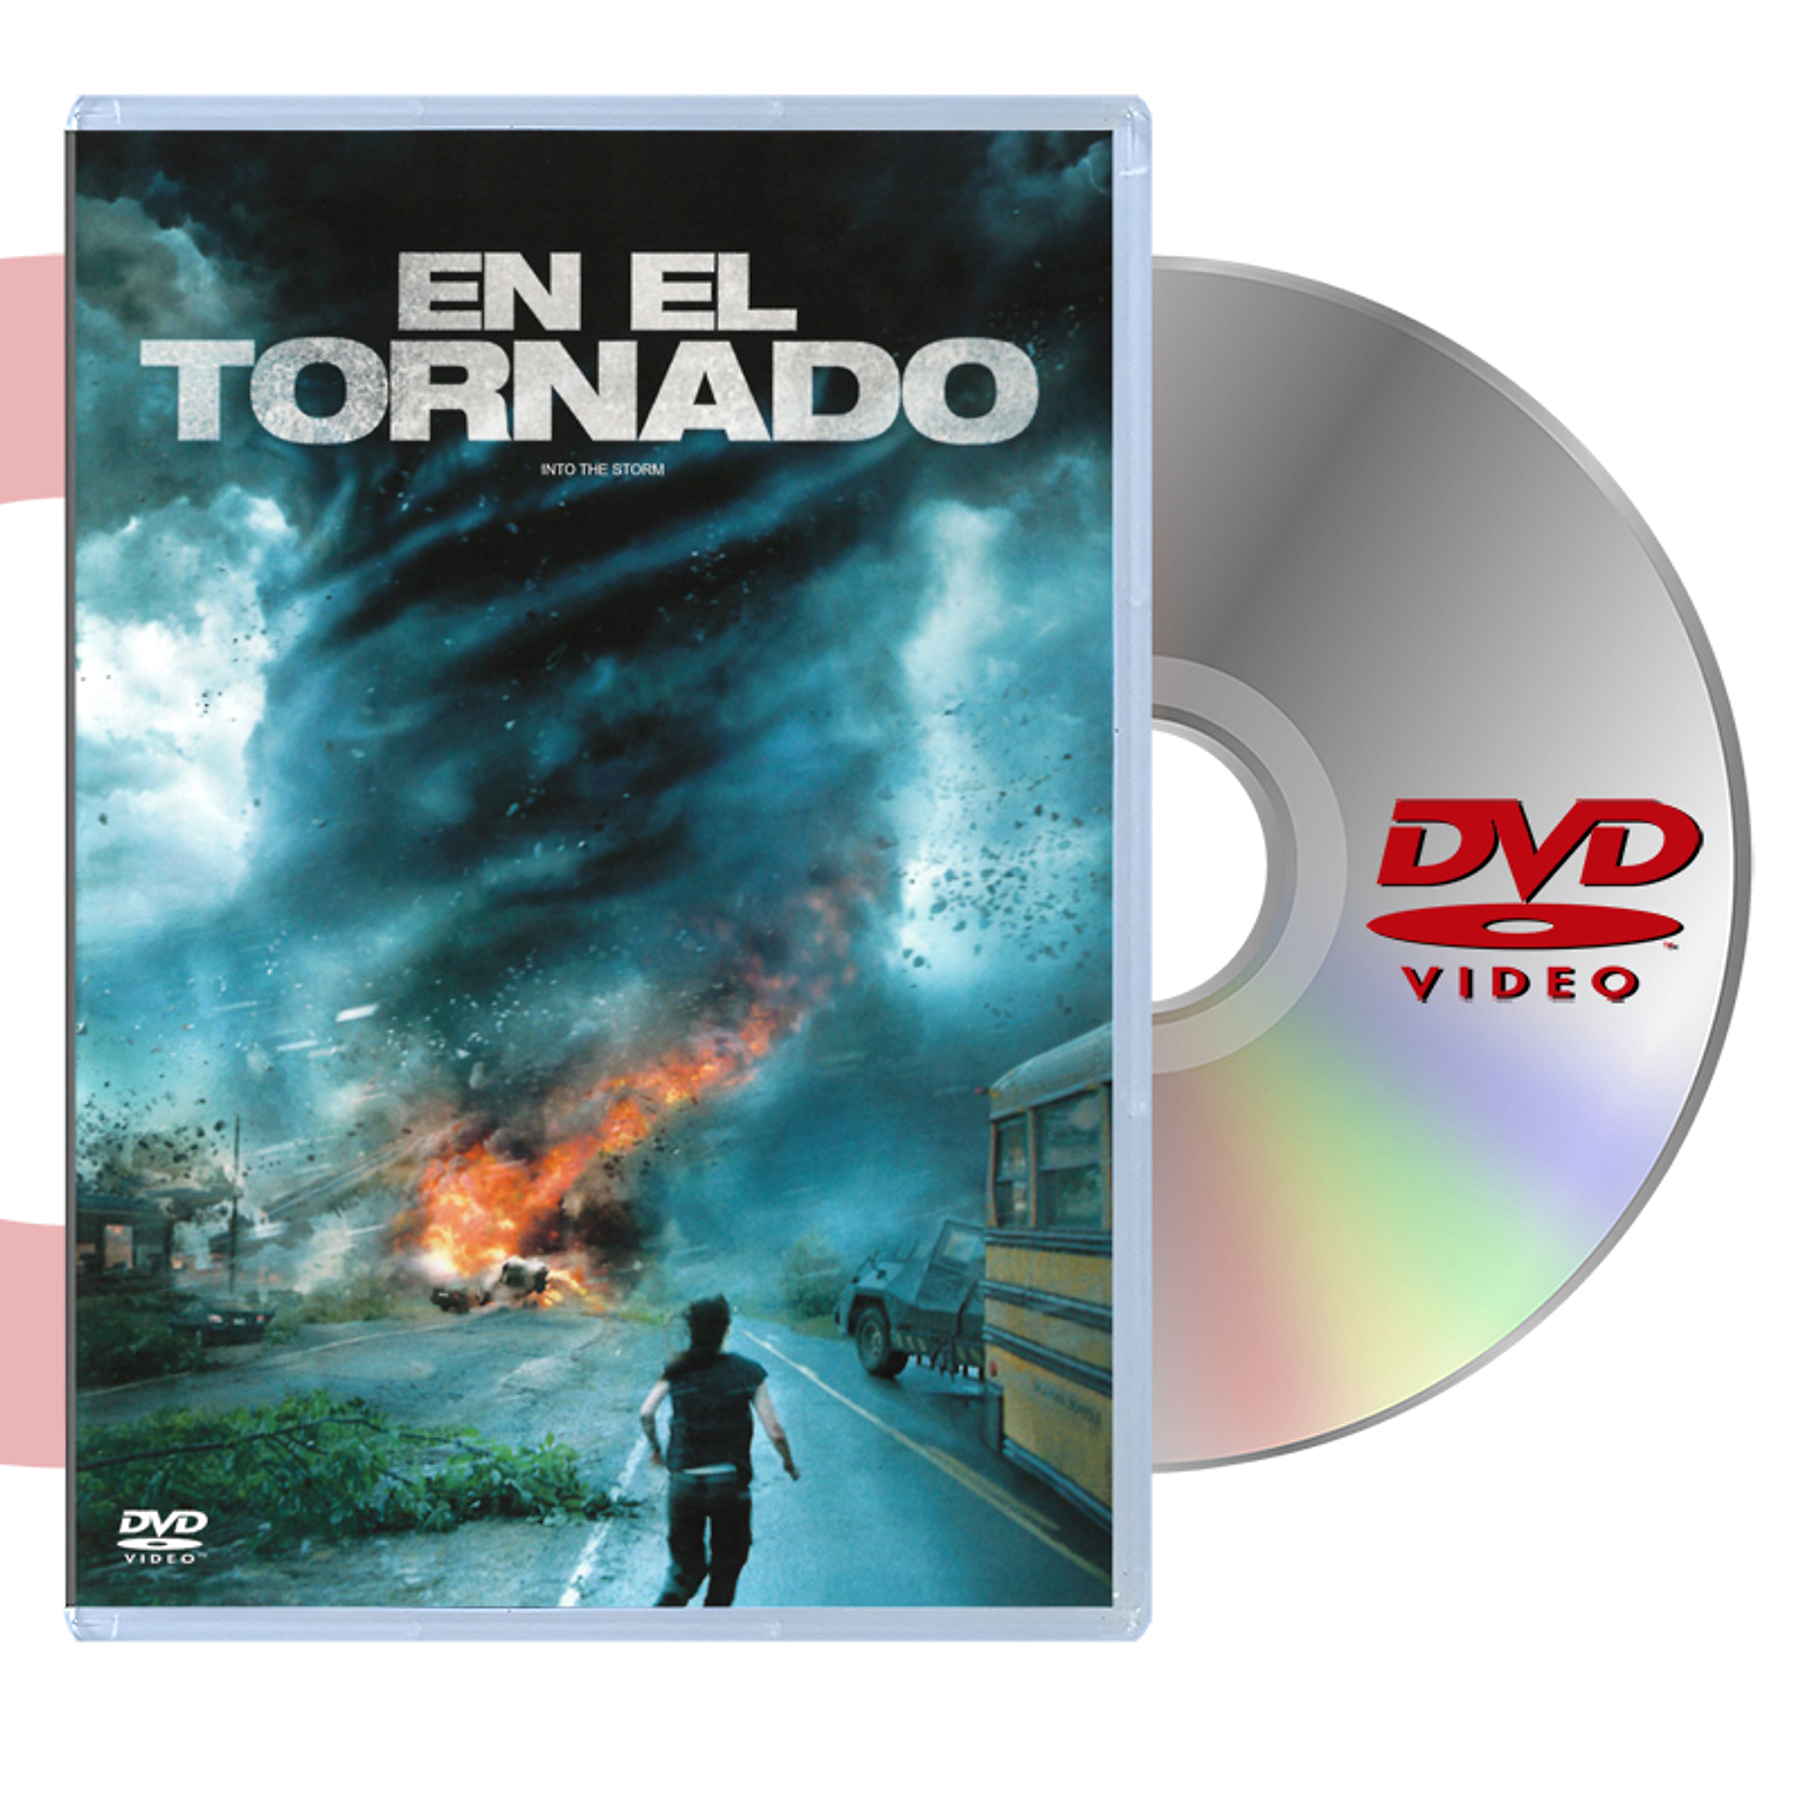 DVD EN EL TORNADO